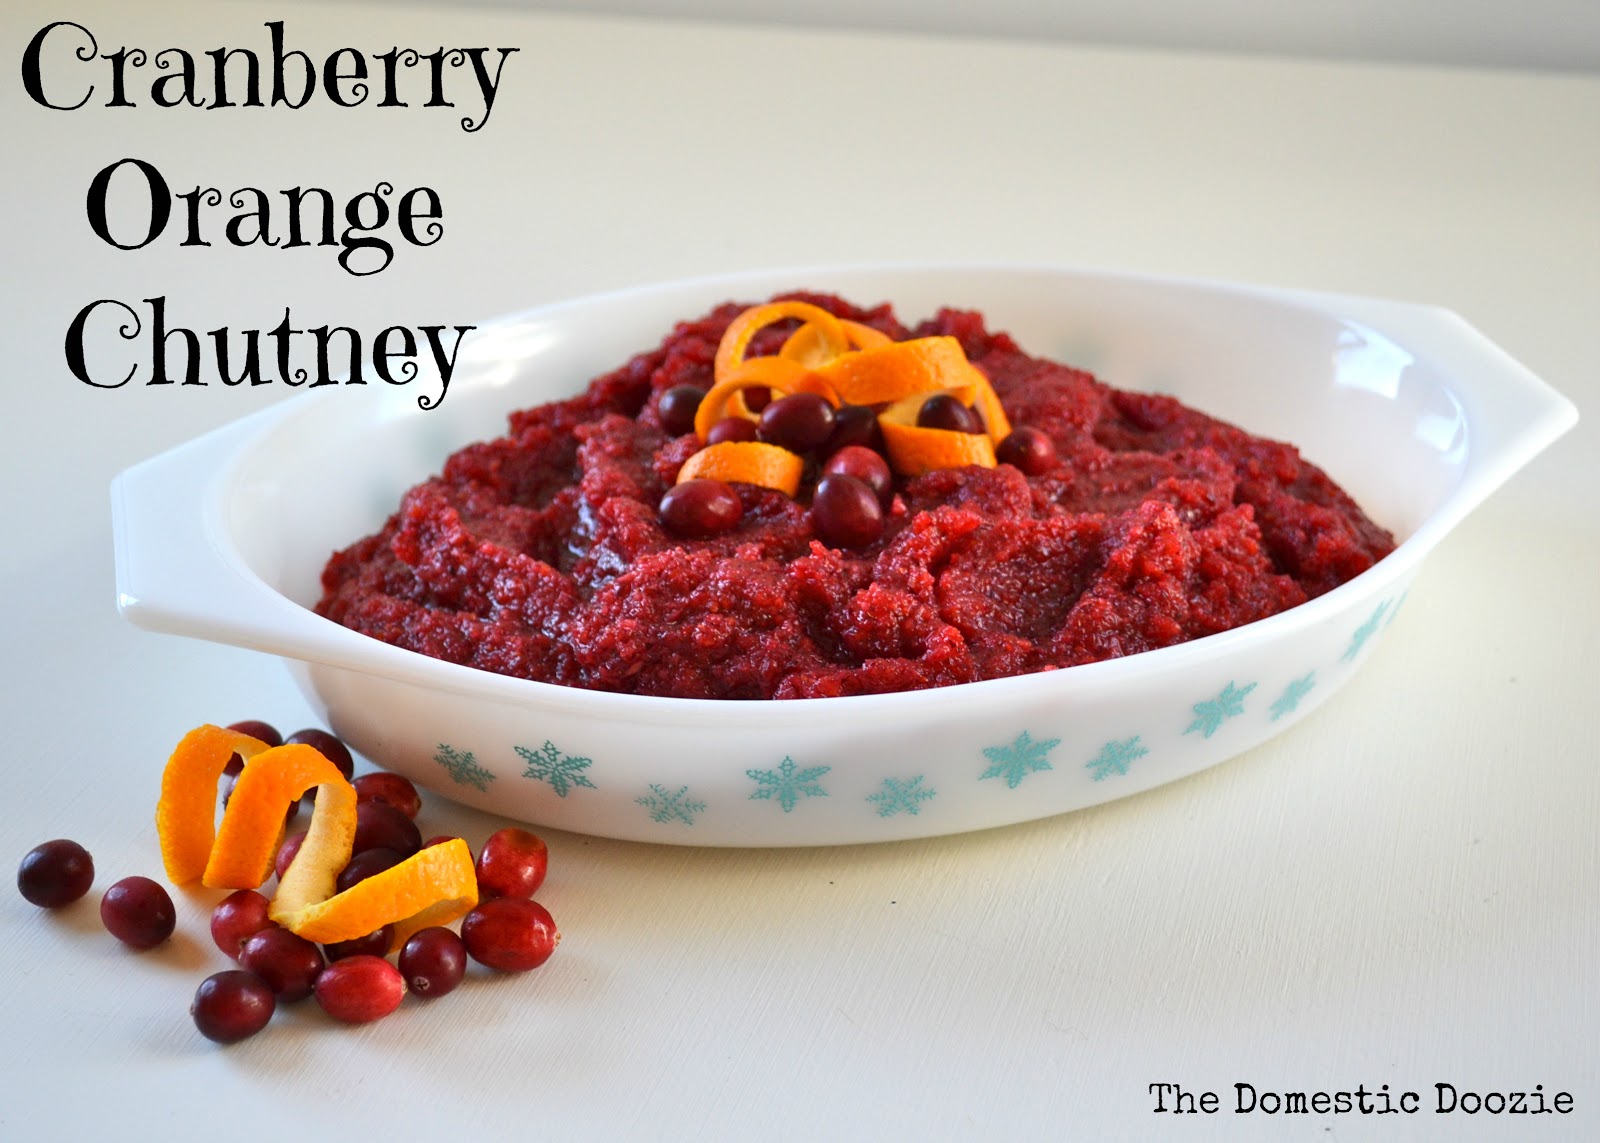 The Domestic Doozie: Cranberry Orange Chutney